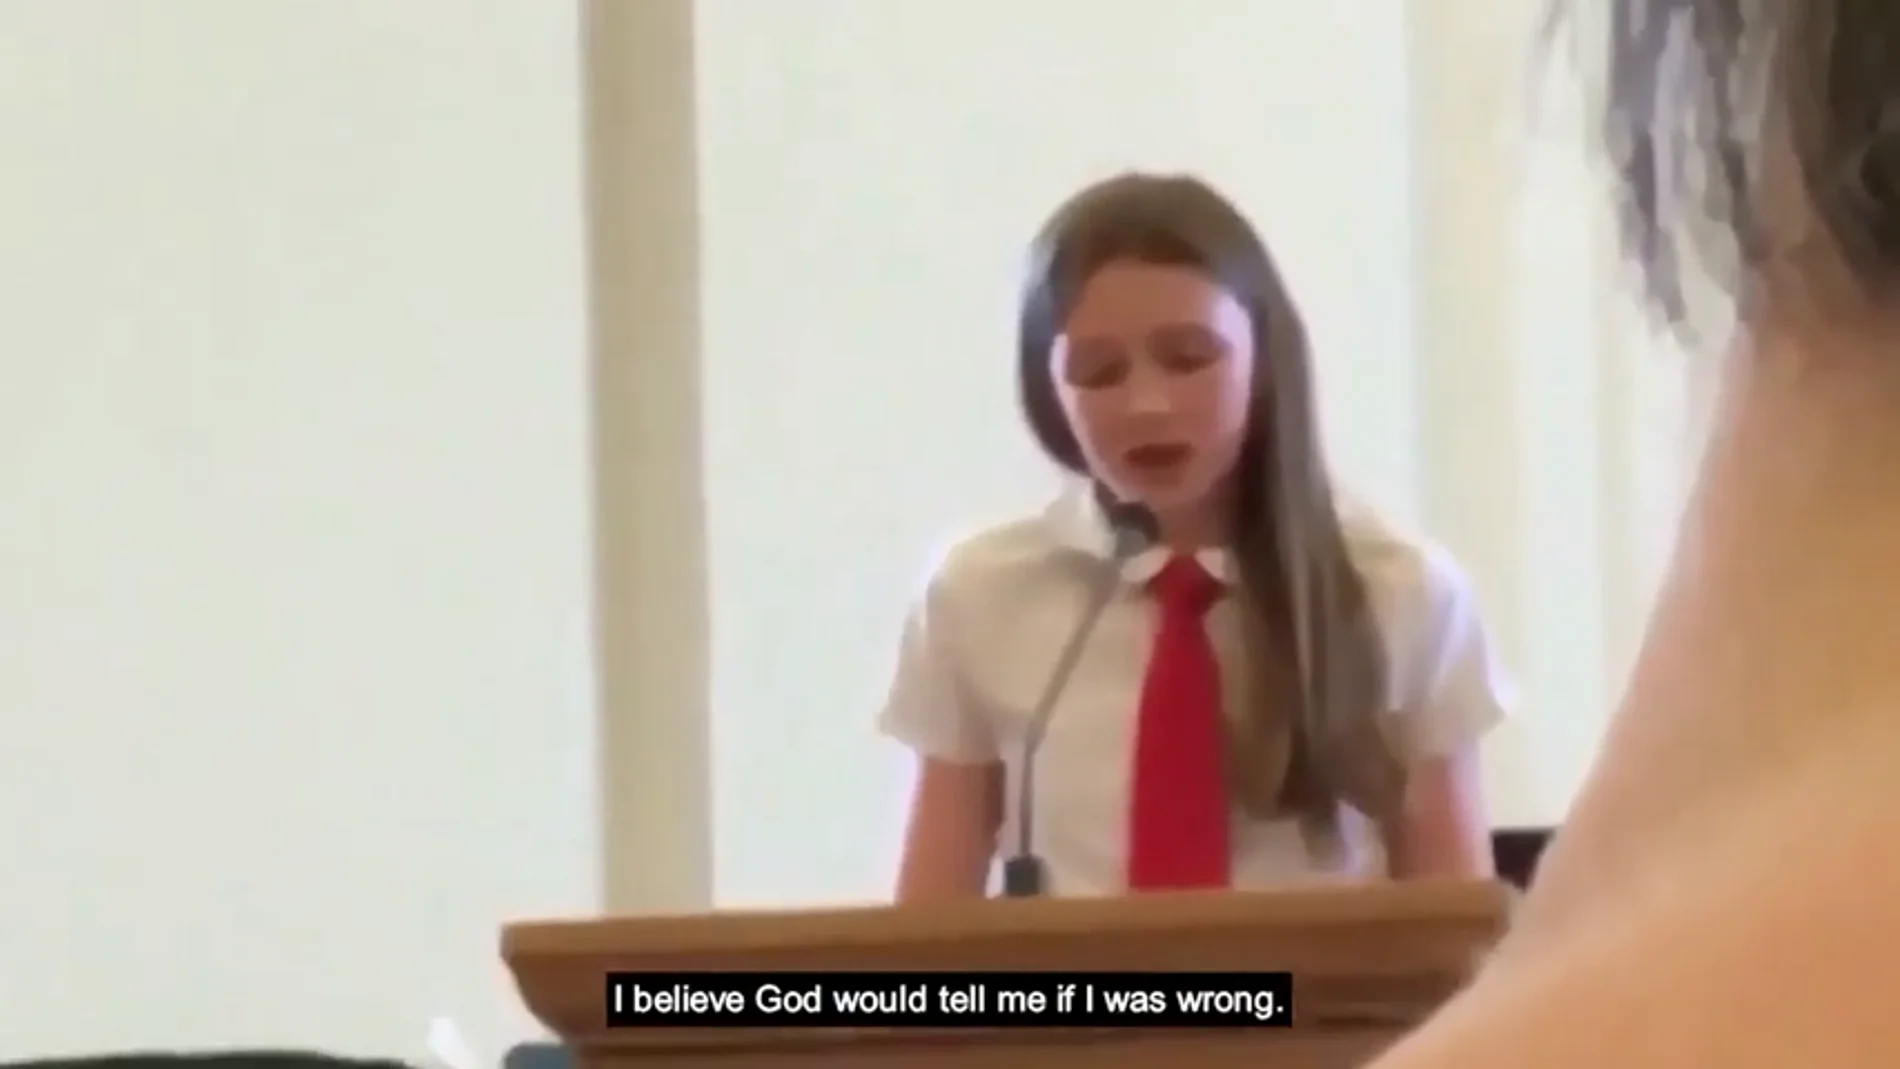 Una niña años confiesa ser lesbiana ante su mormona y le cortan el micrófono: "Dios me hizo así a